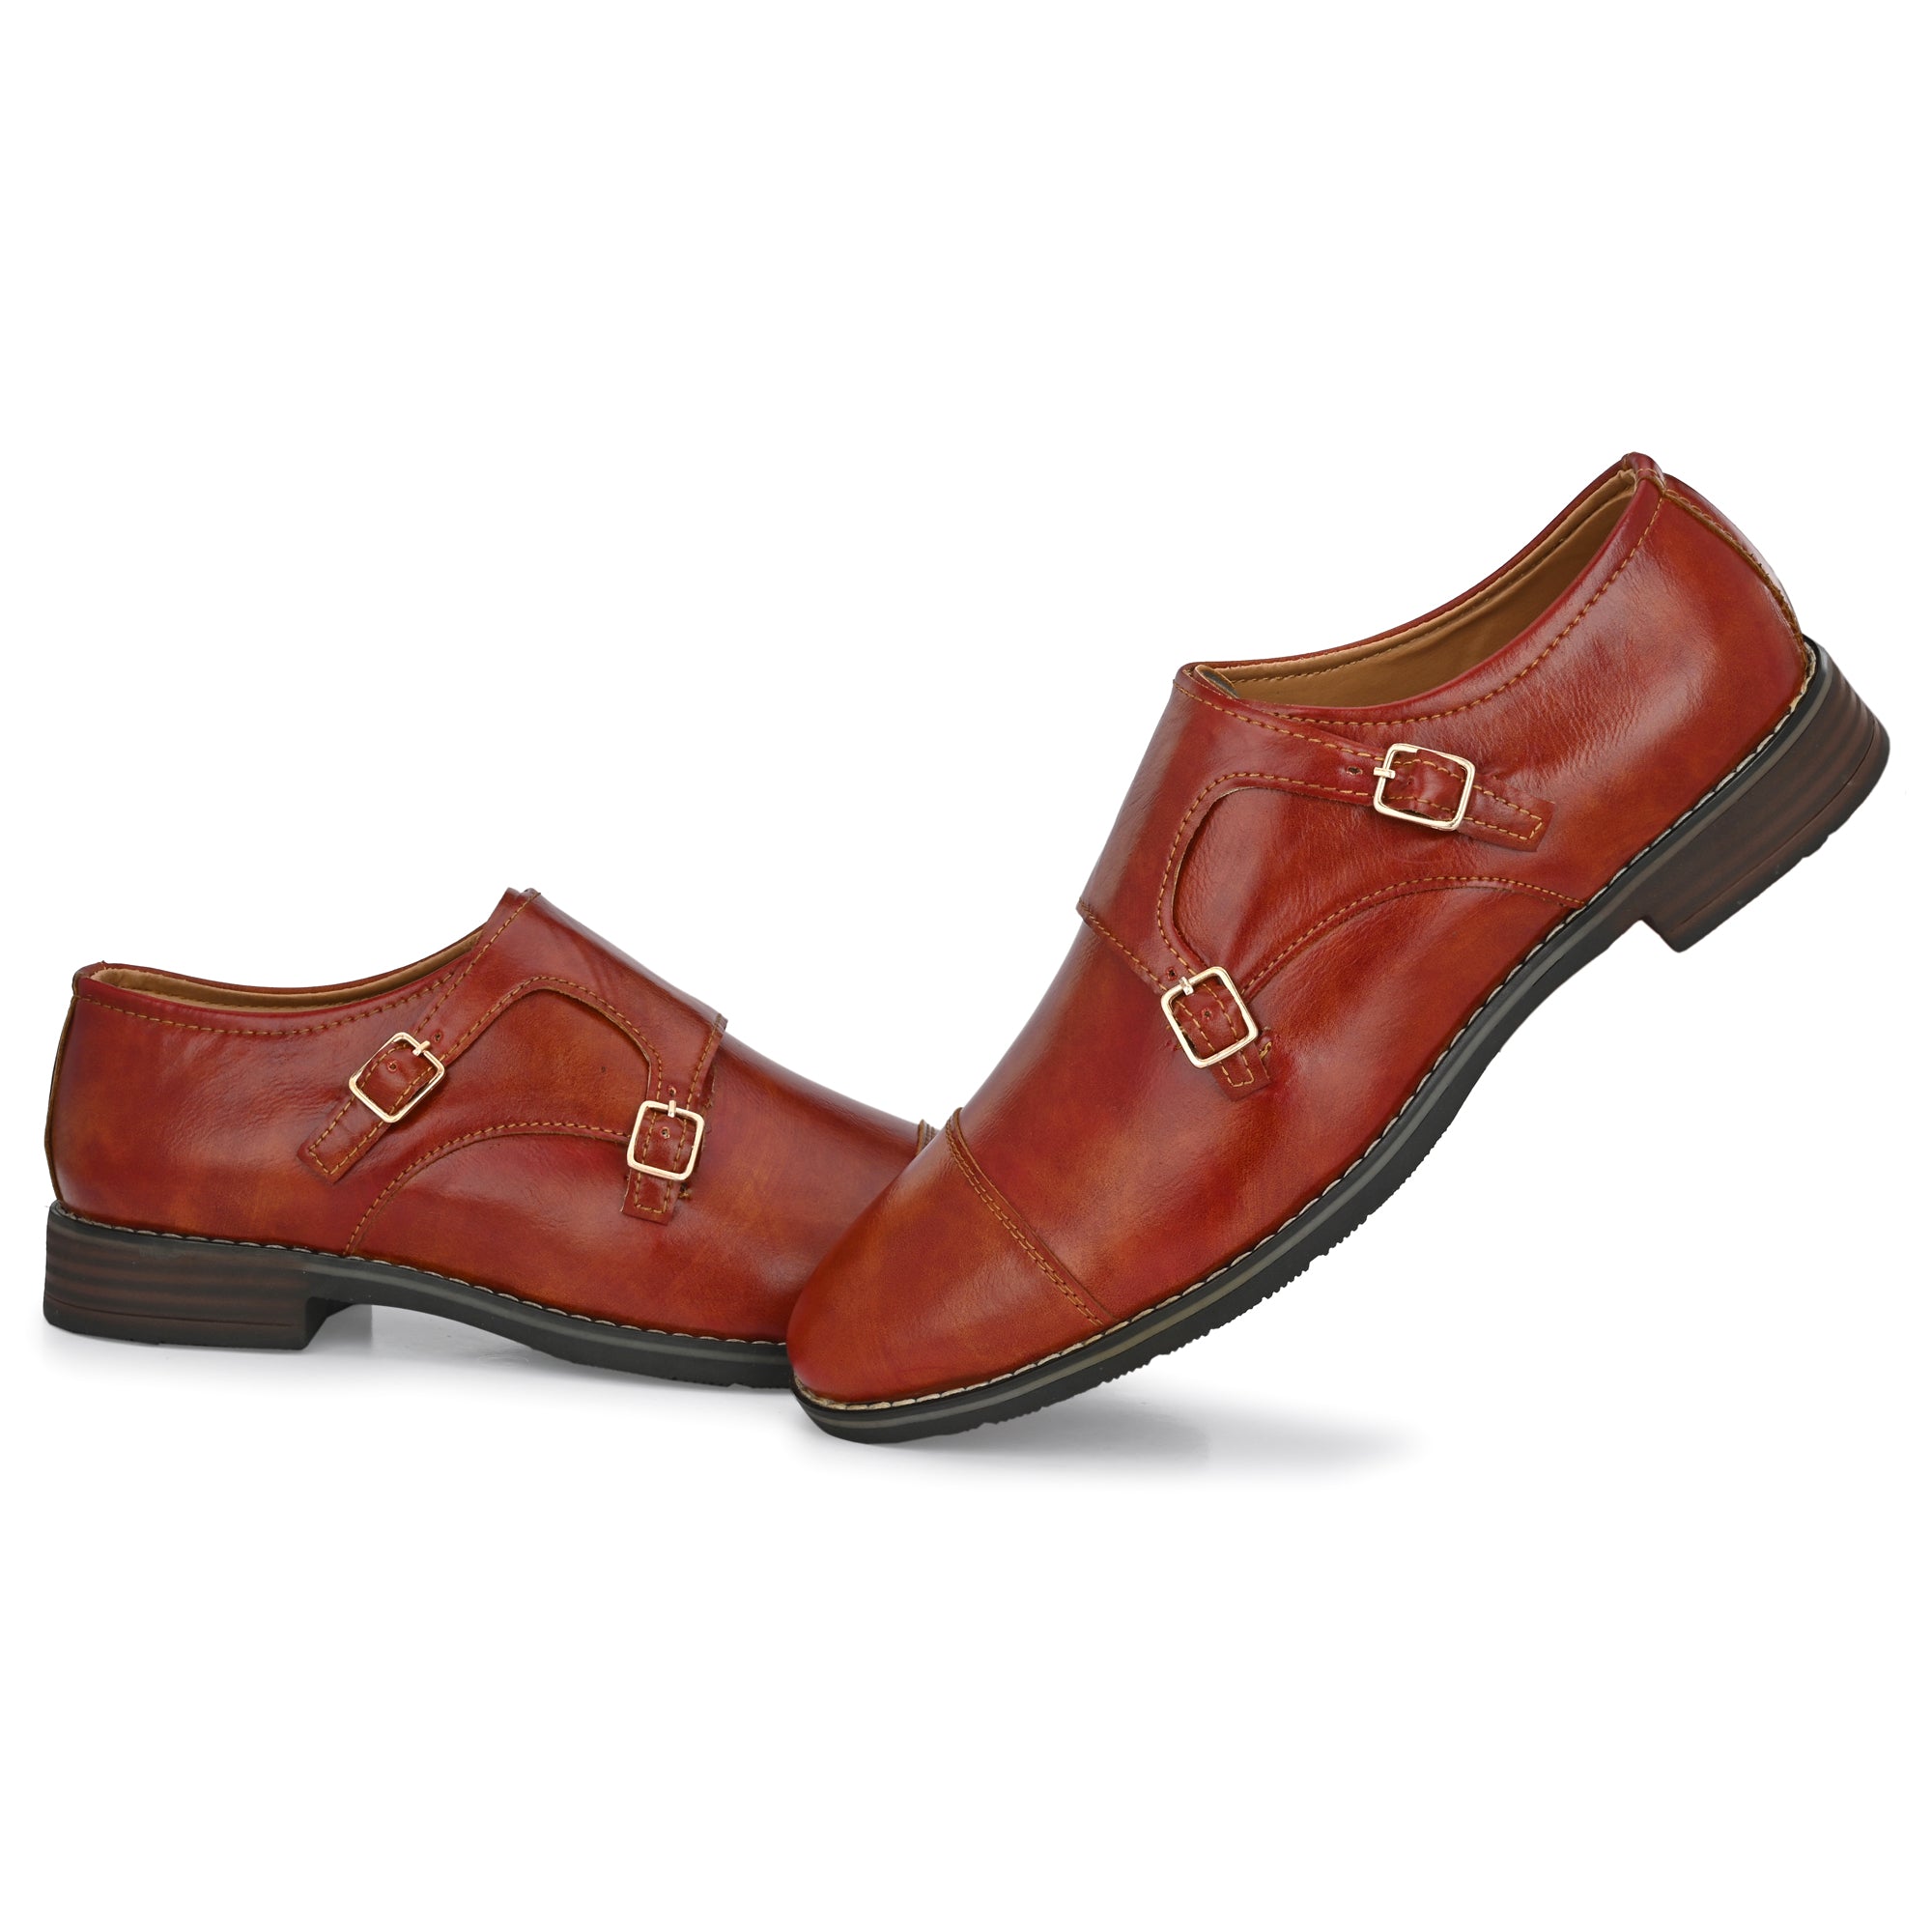 tan-double-monk-strap-attitudist-shoes-for-men-with-buckle-sp4c